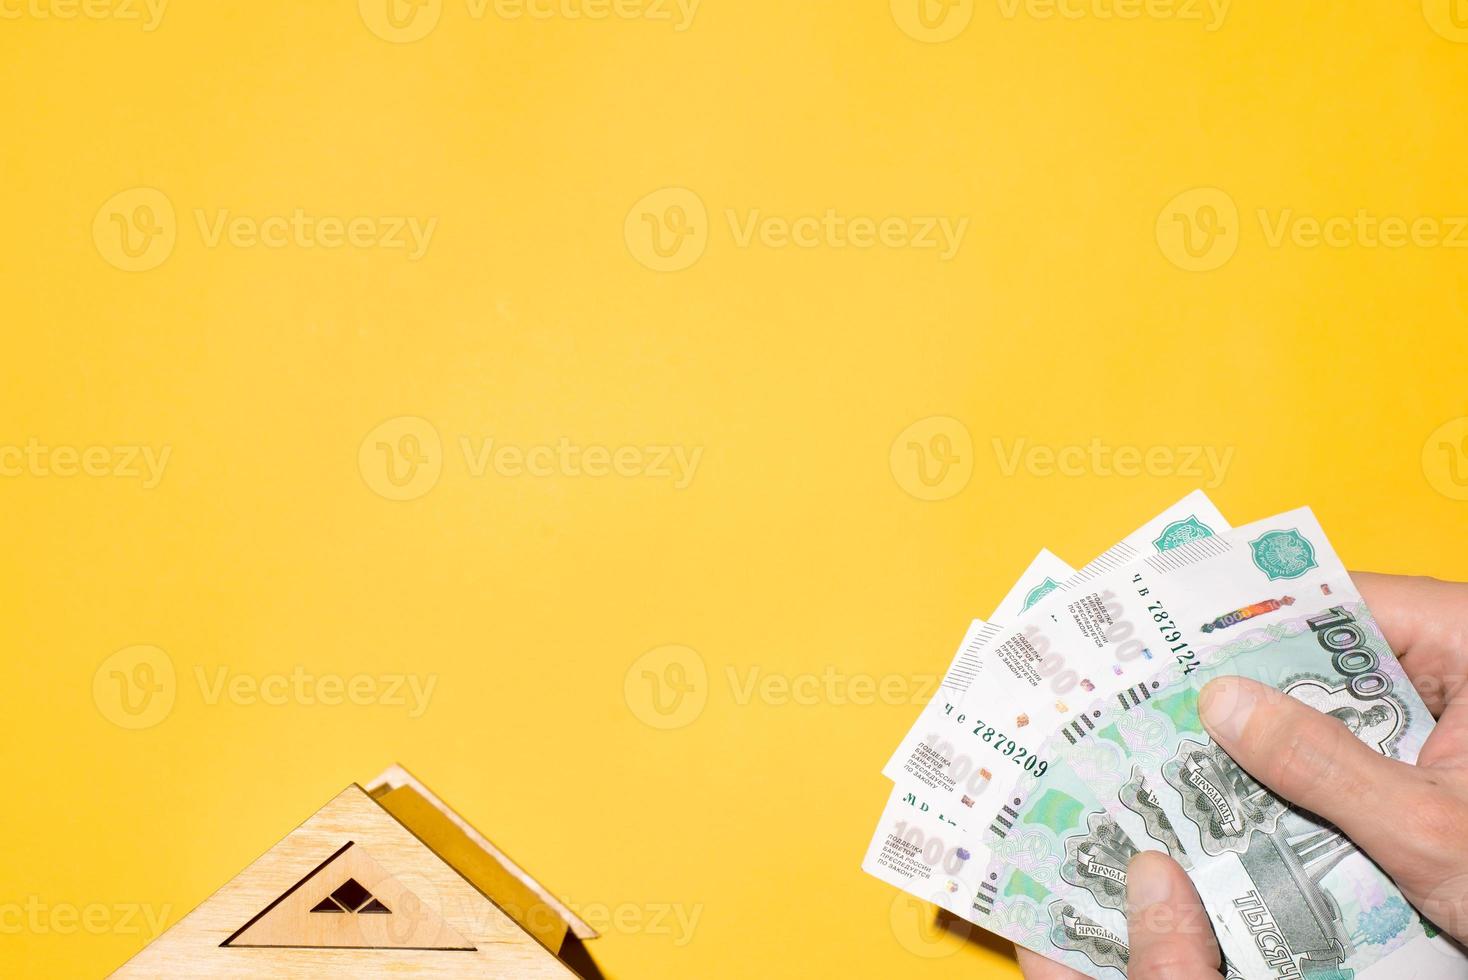 modèle de toit en bois de maison et mains d'homme tenant de l'argent, vue de dessus. le concept d'achat de biens immobiliers, de factures de services publics, d'assurance, d'investissement. fond jaune, espace de copie photo